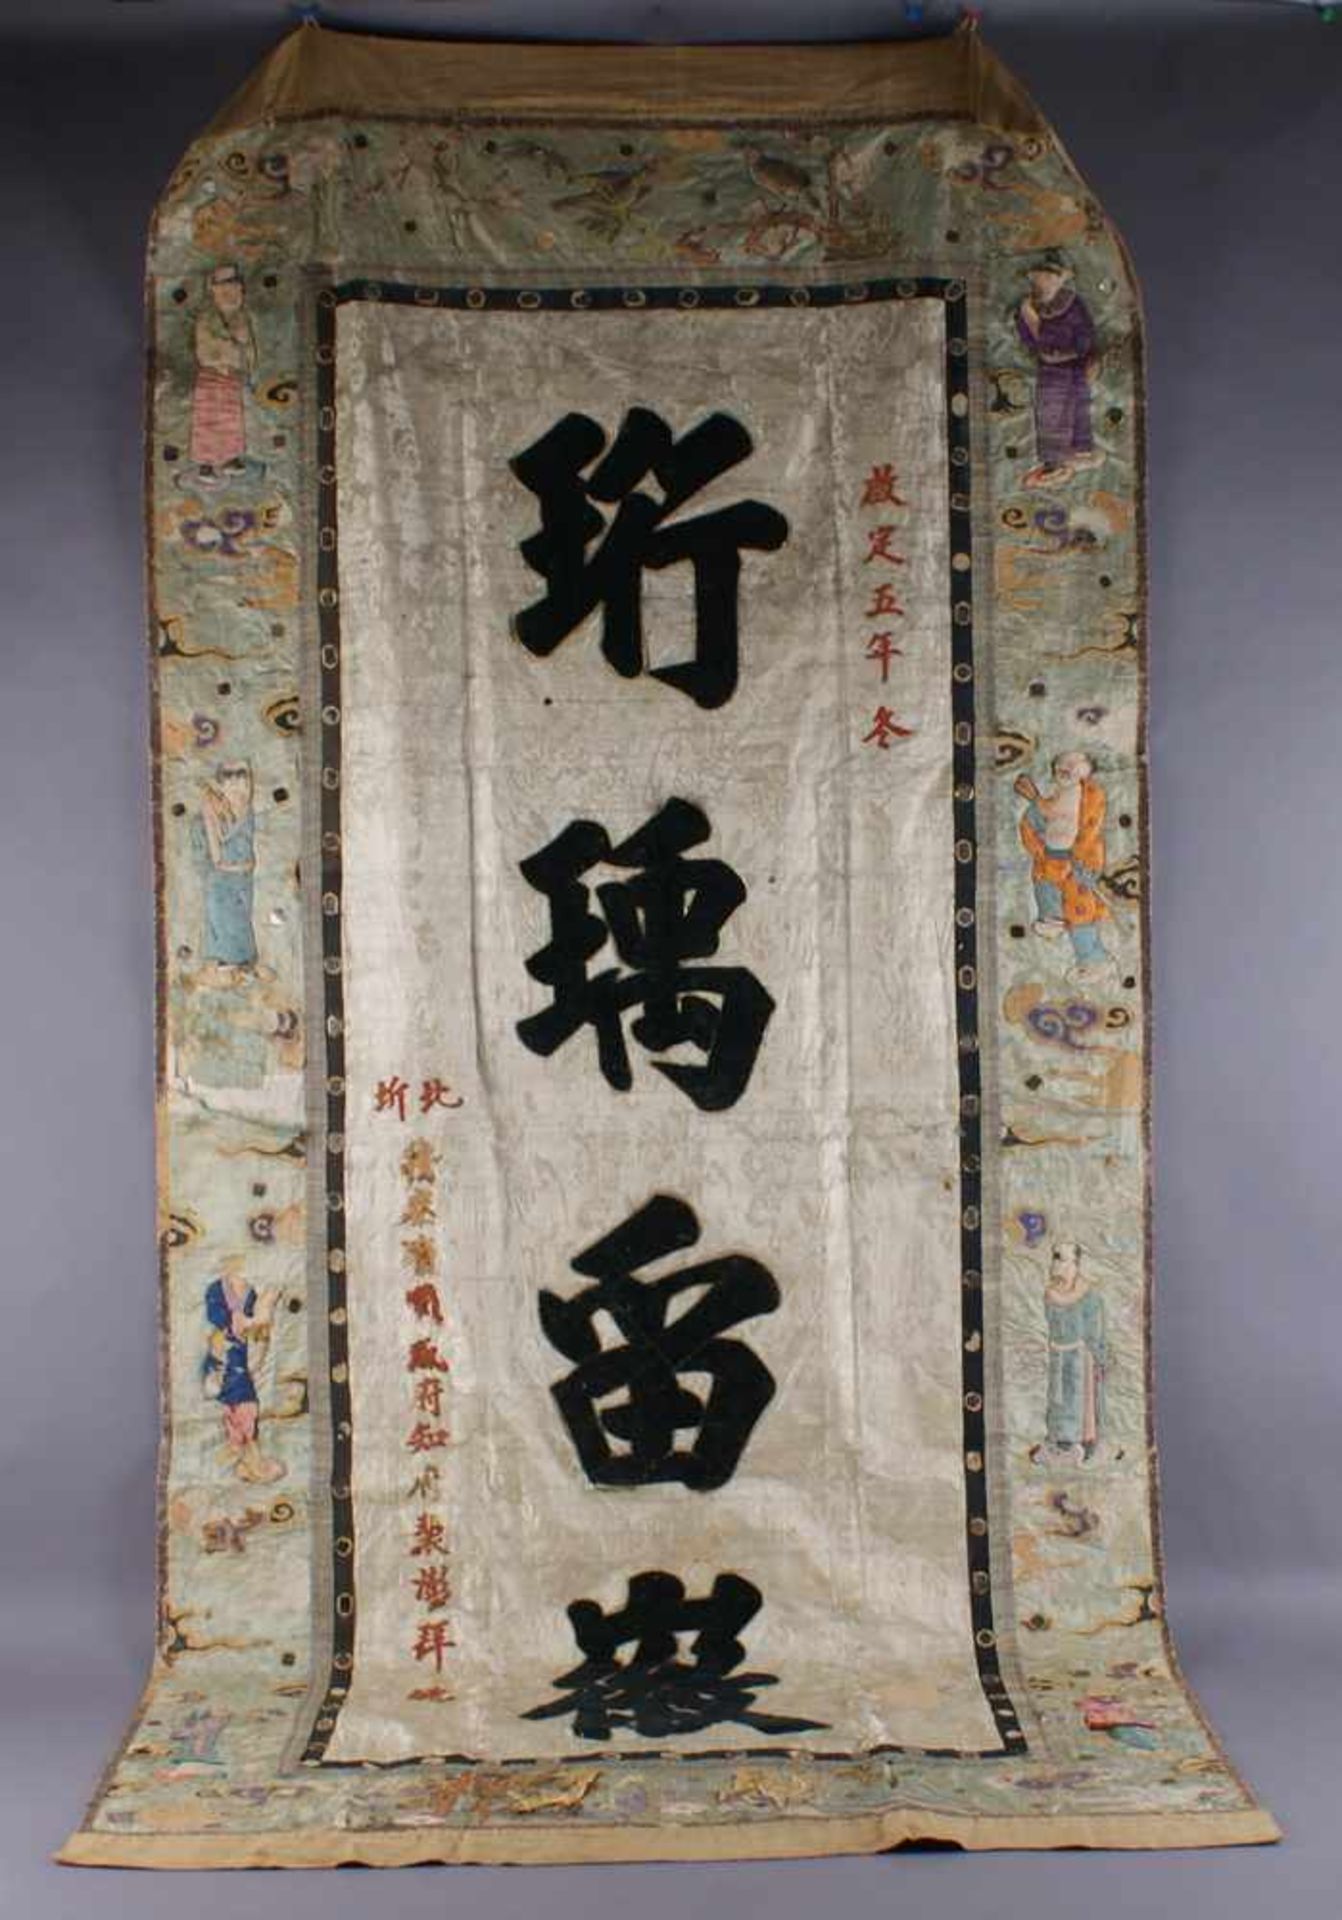 Chinesischer Wandteppich / Tischdecke mit prunkvollen Applikationen aus Stoff, Leder,Papier,